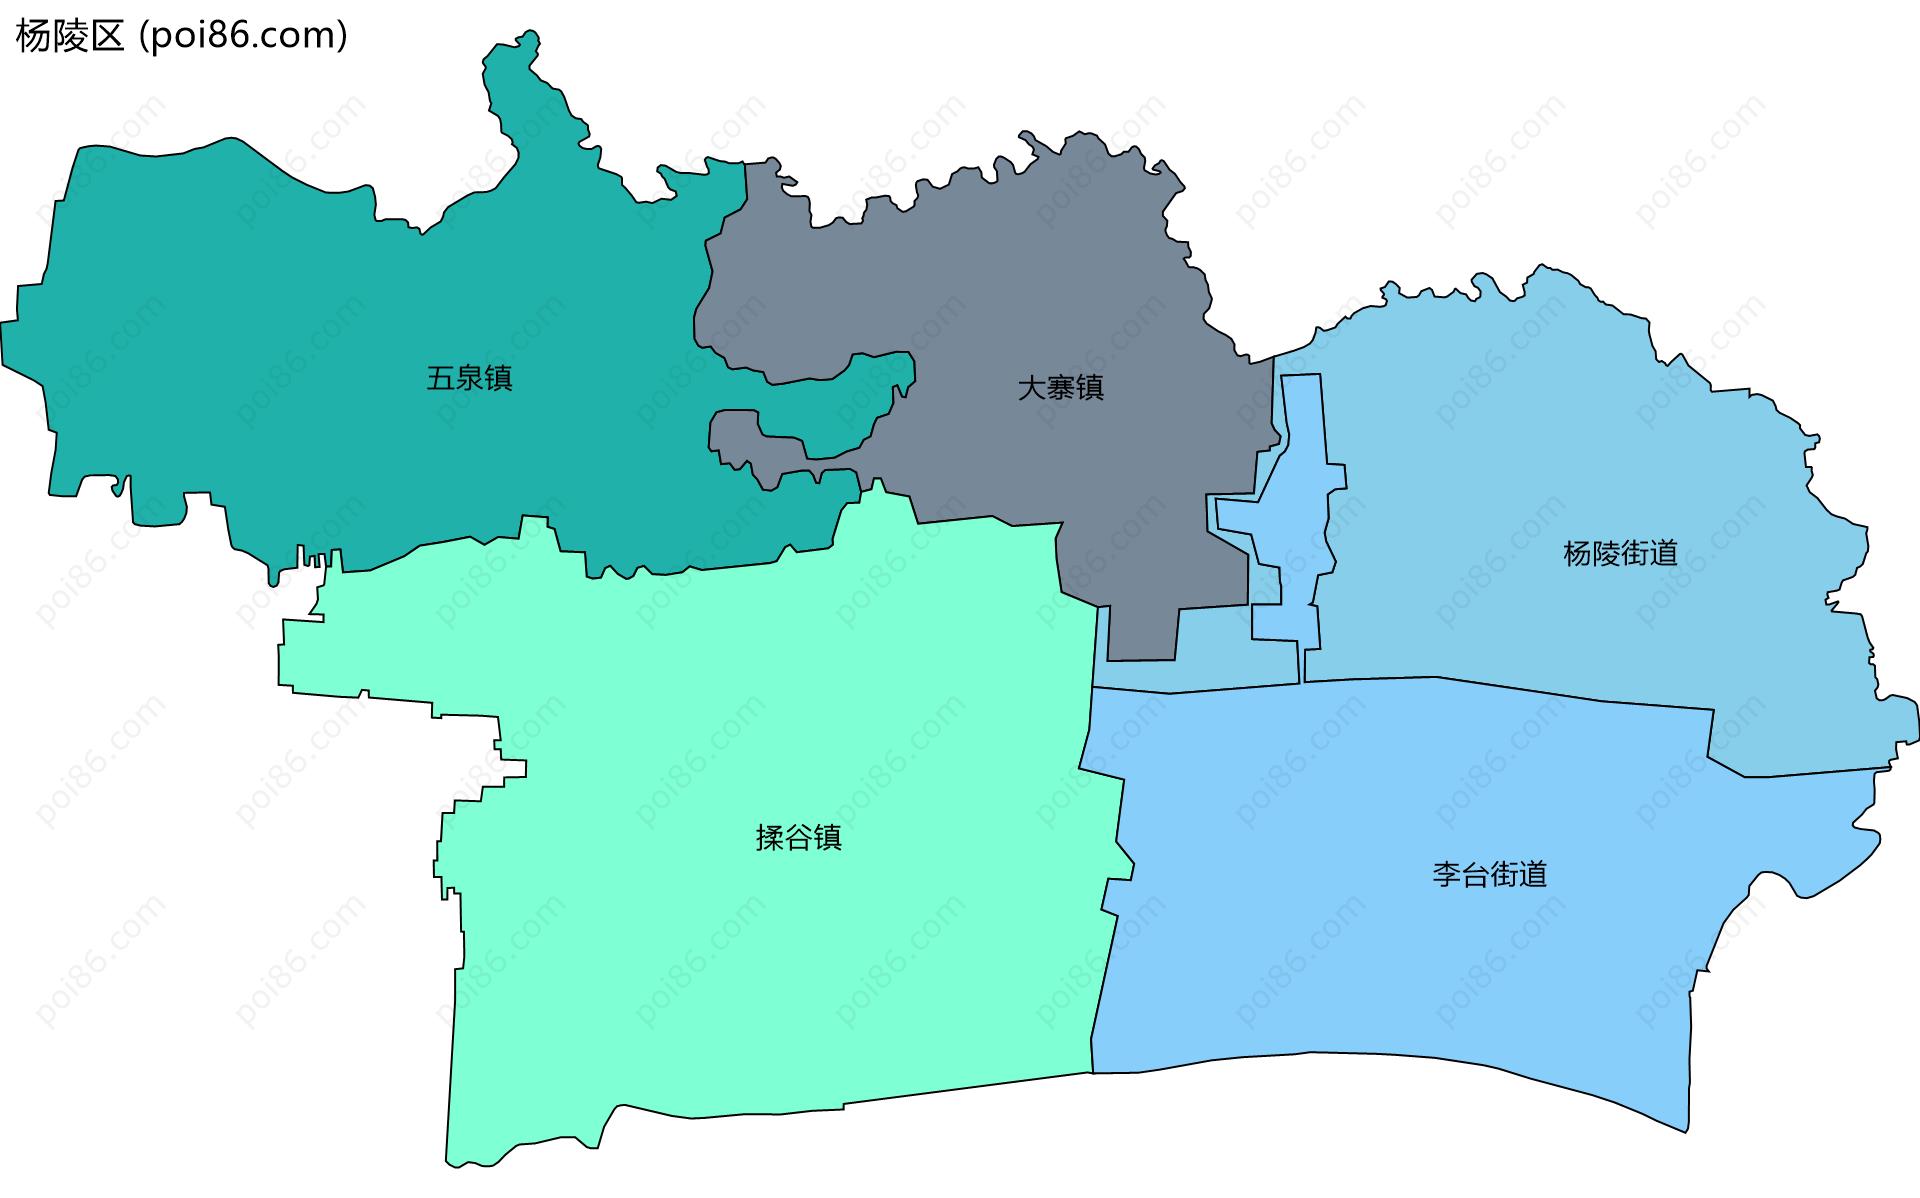 杨陵区边界地图